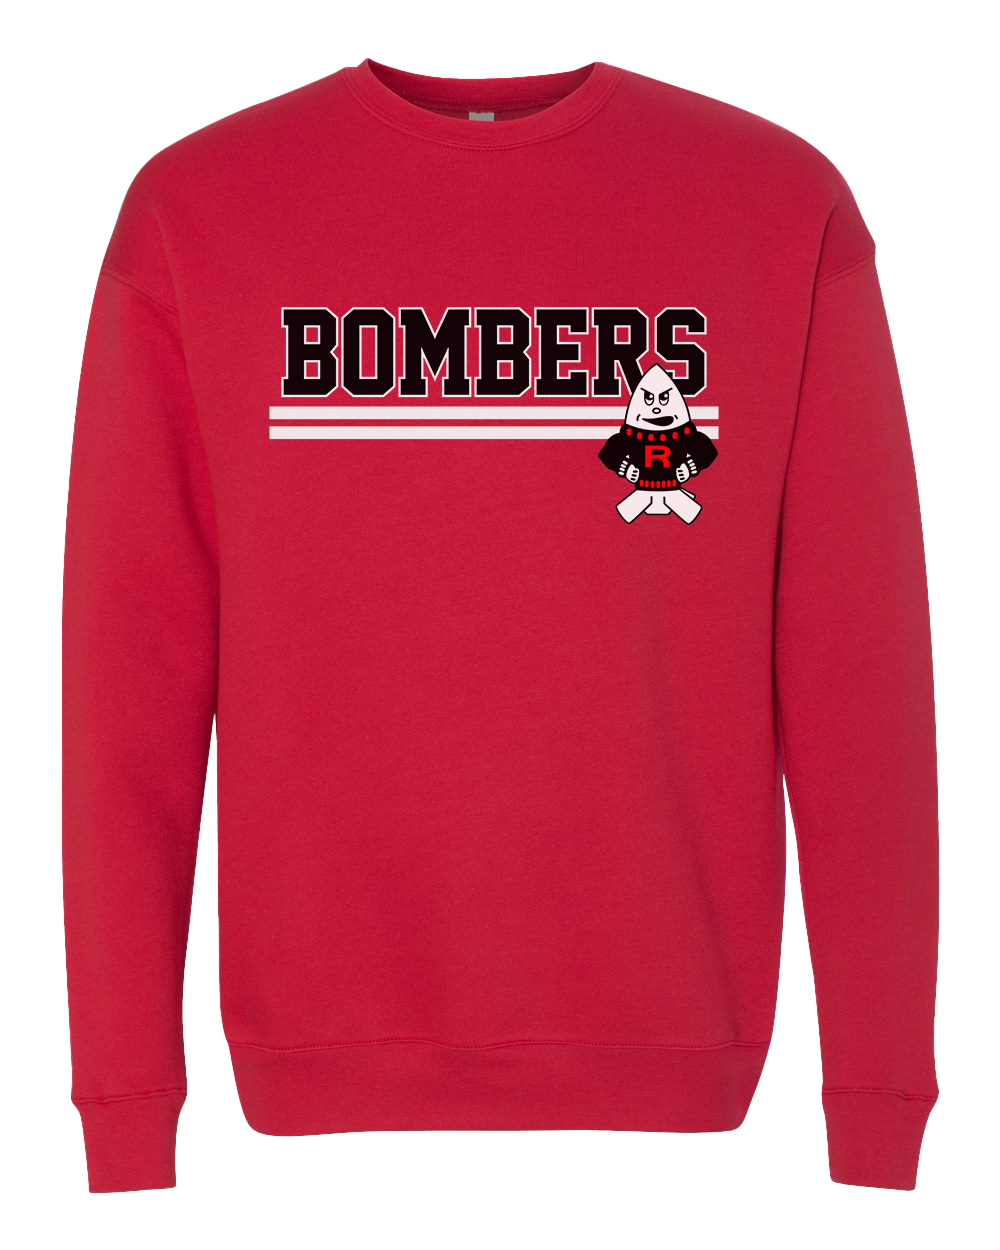 Rensselaer Central Bombers Retro Crew Sweatshirt - Red